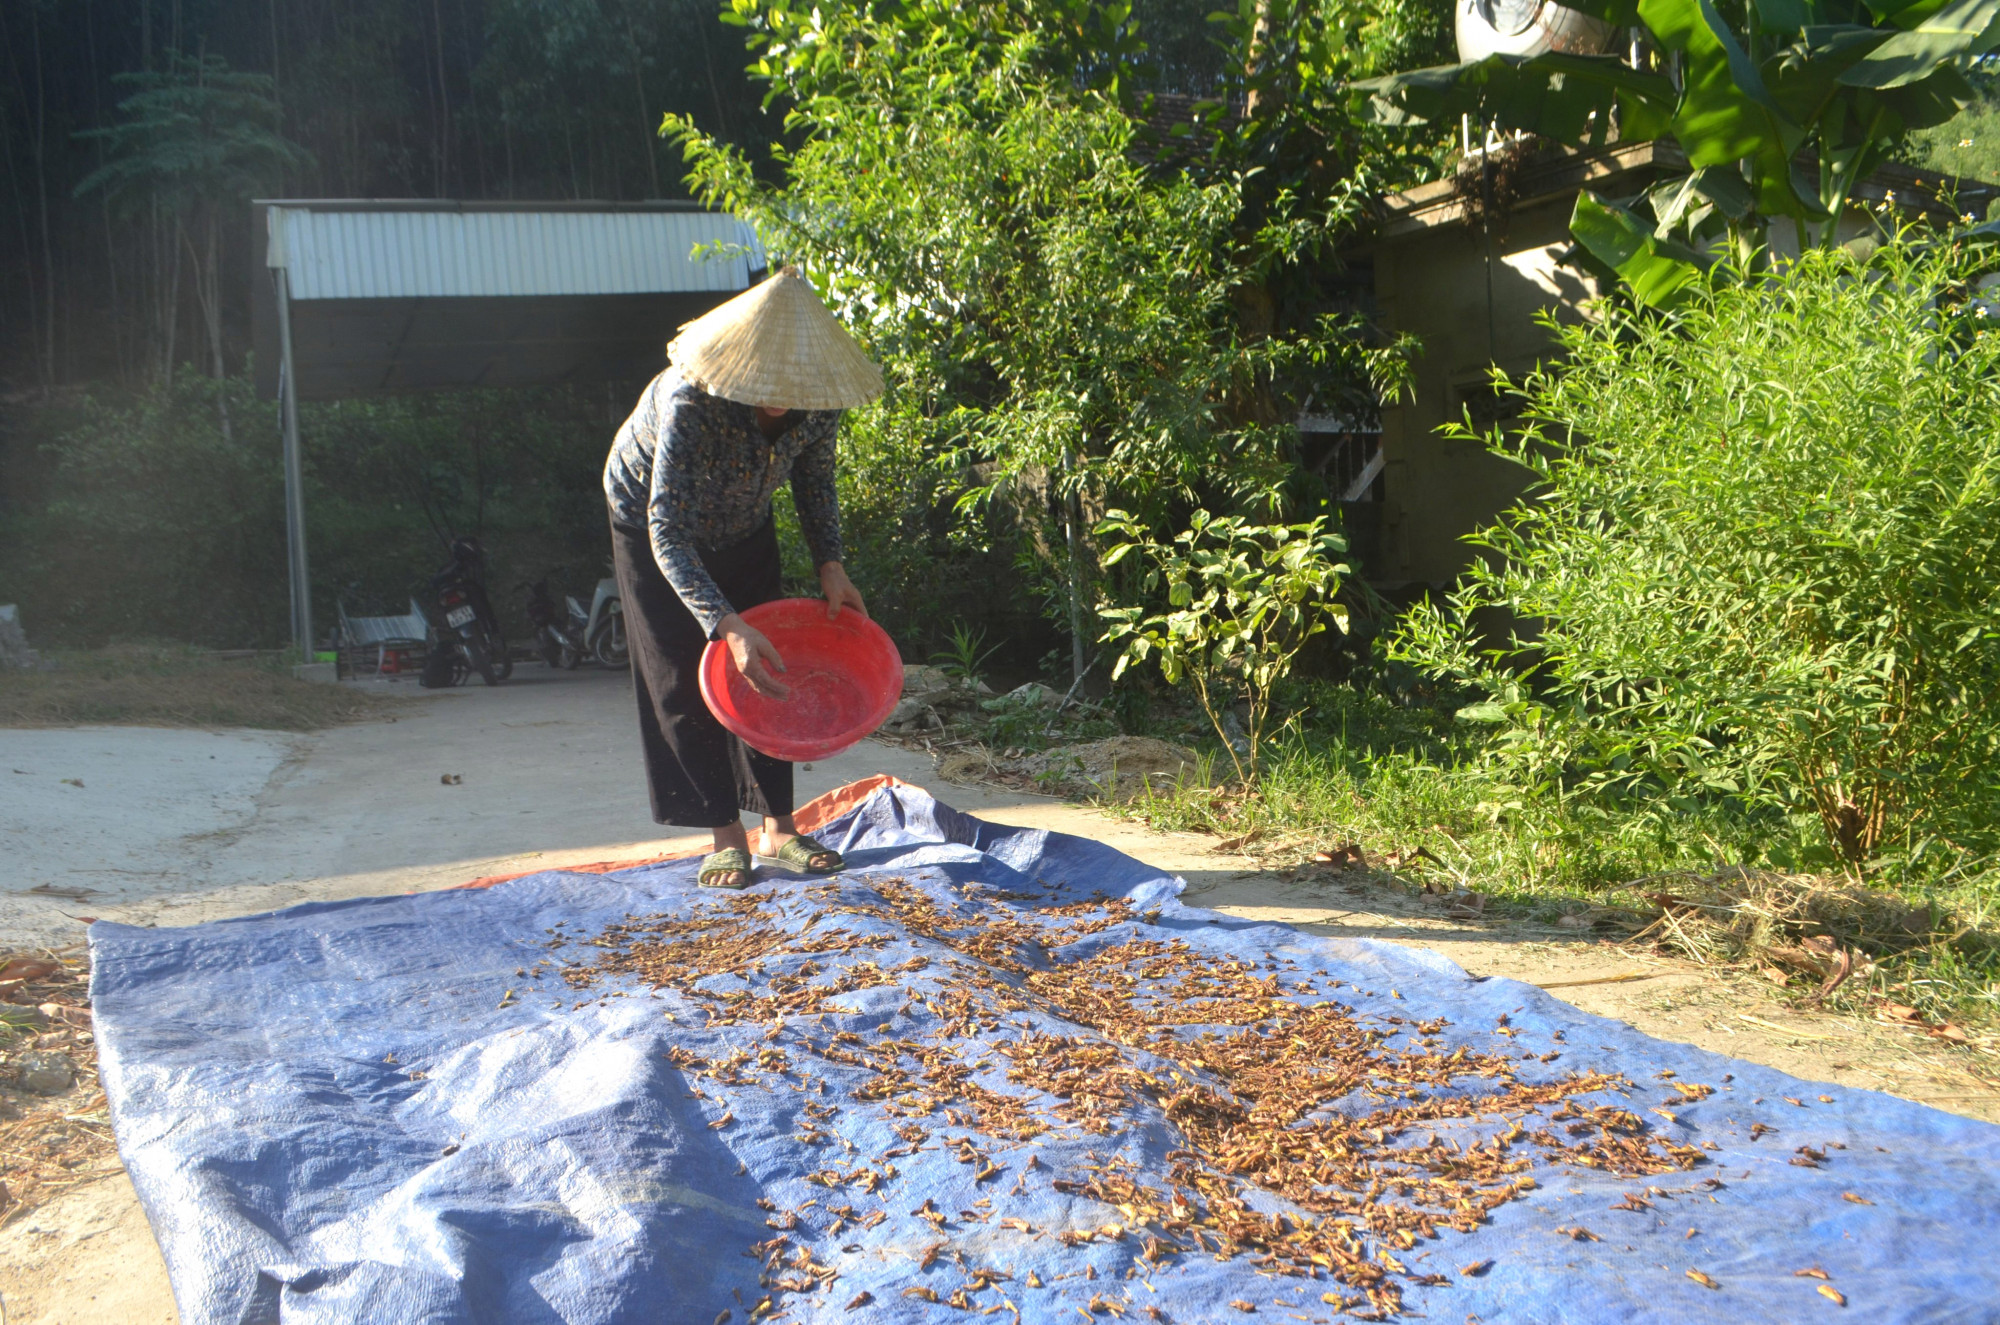 Châu chấu được phơi khô để làm thức ăn cho gia cầm - Ảnh: Khánh Trung